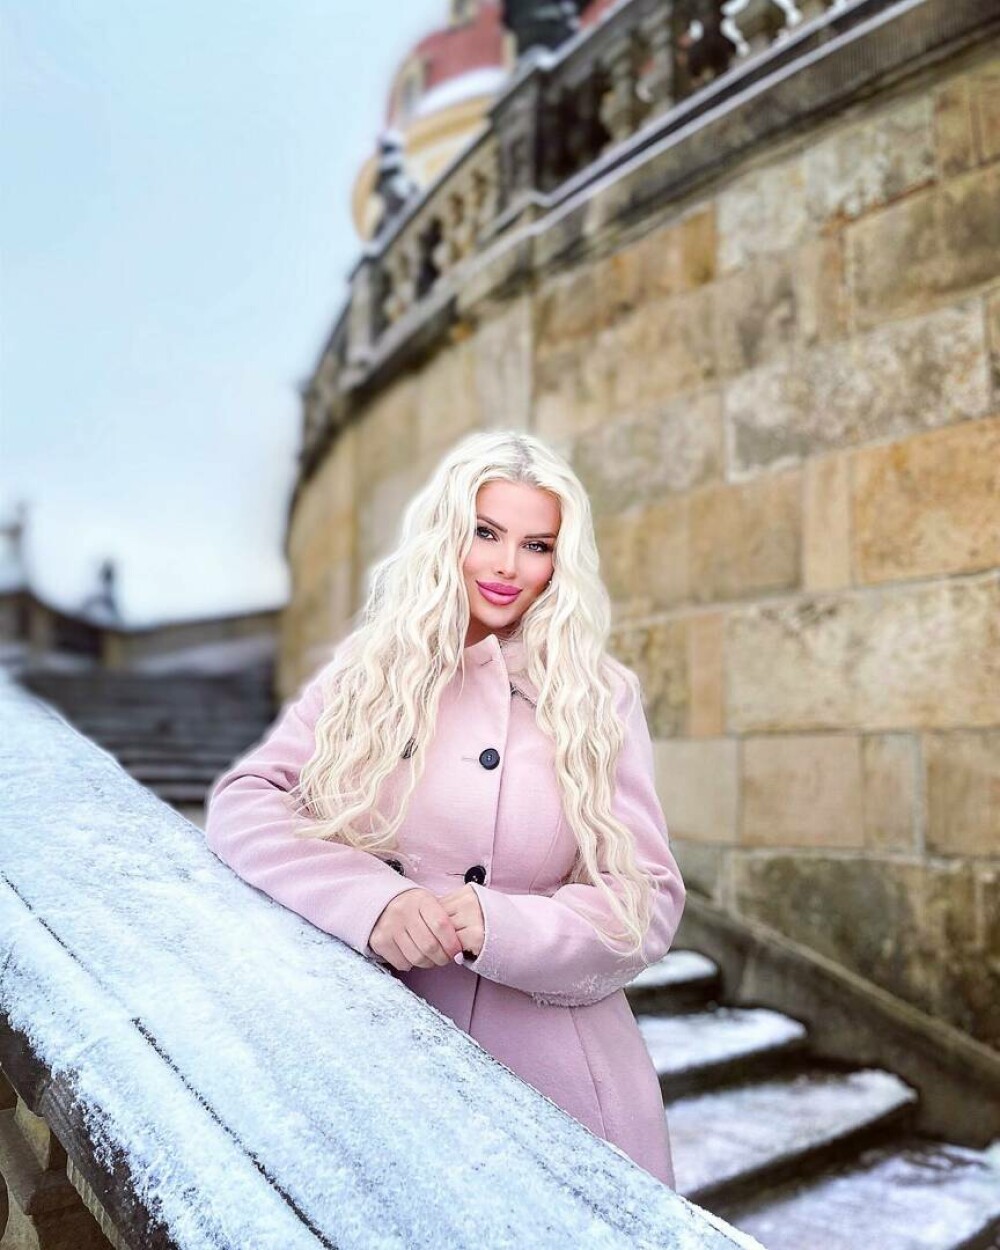 Cum arată „Barbie din viața reală”. Solista din Cehia povestește că a fost la un pas să fie „cumpărată” de un producător - Imaginea 76